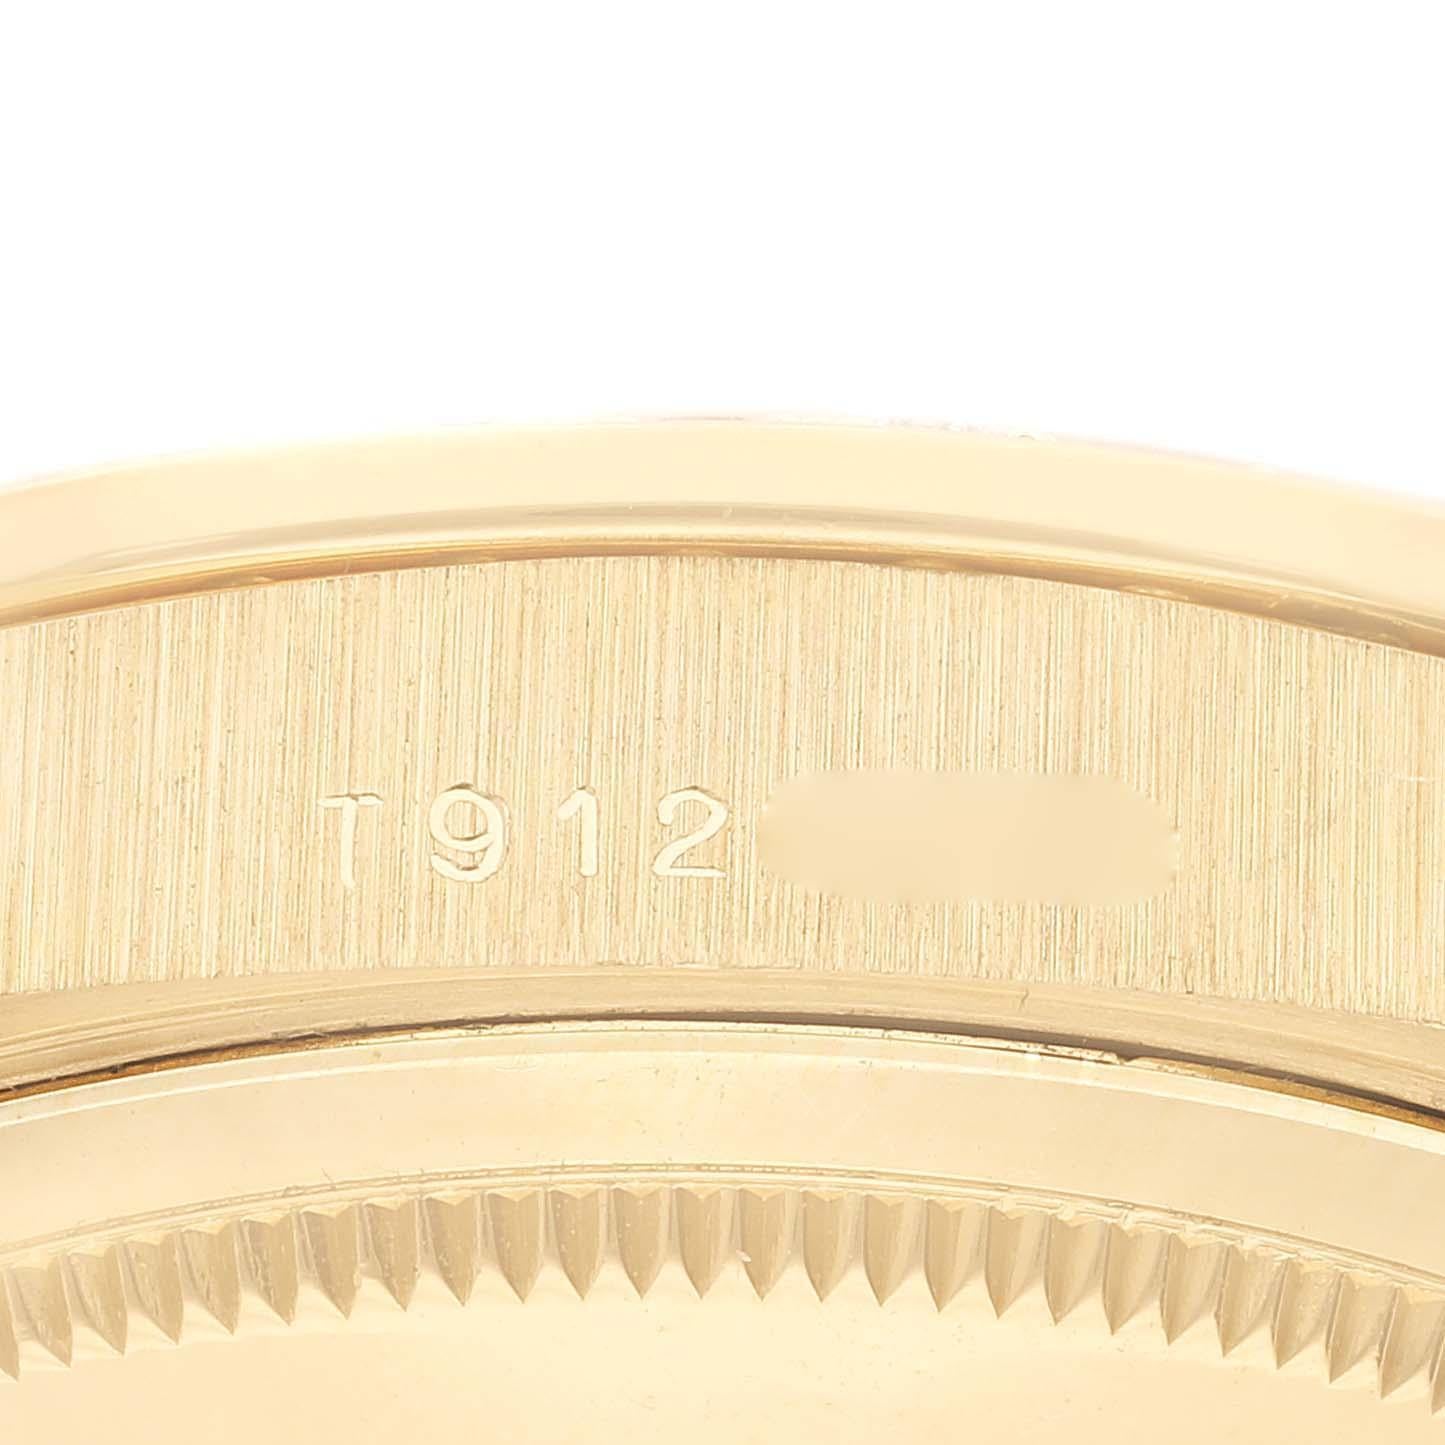 Rolex President Day Date 36mm Yellow Gold Diamond Mens Watch 18348. Mouvement à remontage automatique certifié chronomètre. Boîtier en or jaune 18 carats de 36 mm de diamètre. Logo Rolex sur une couronne. Lunette originale d'usine Rolex en or jaune